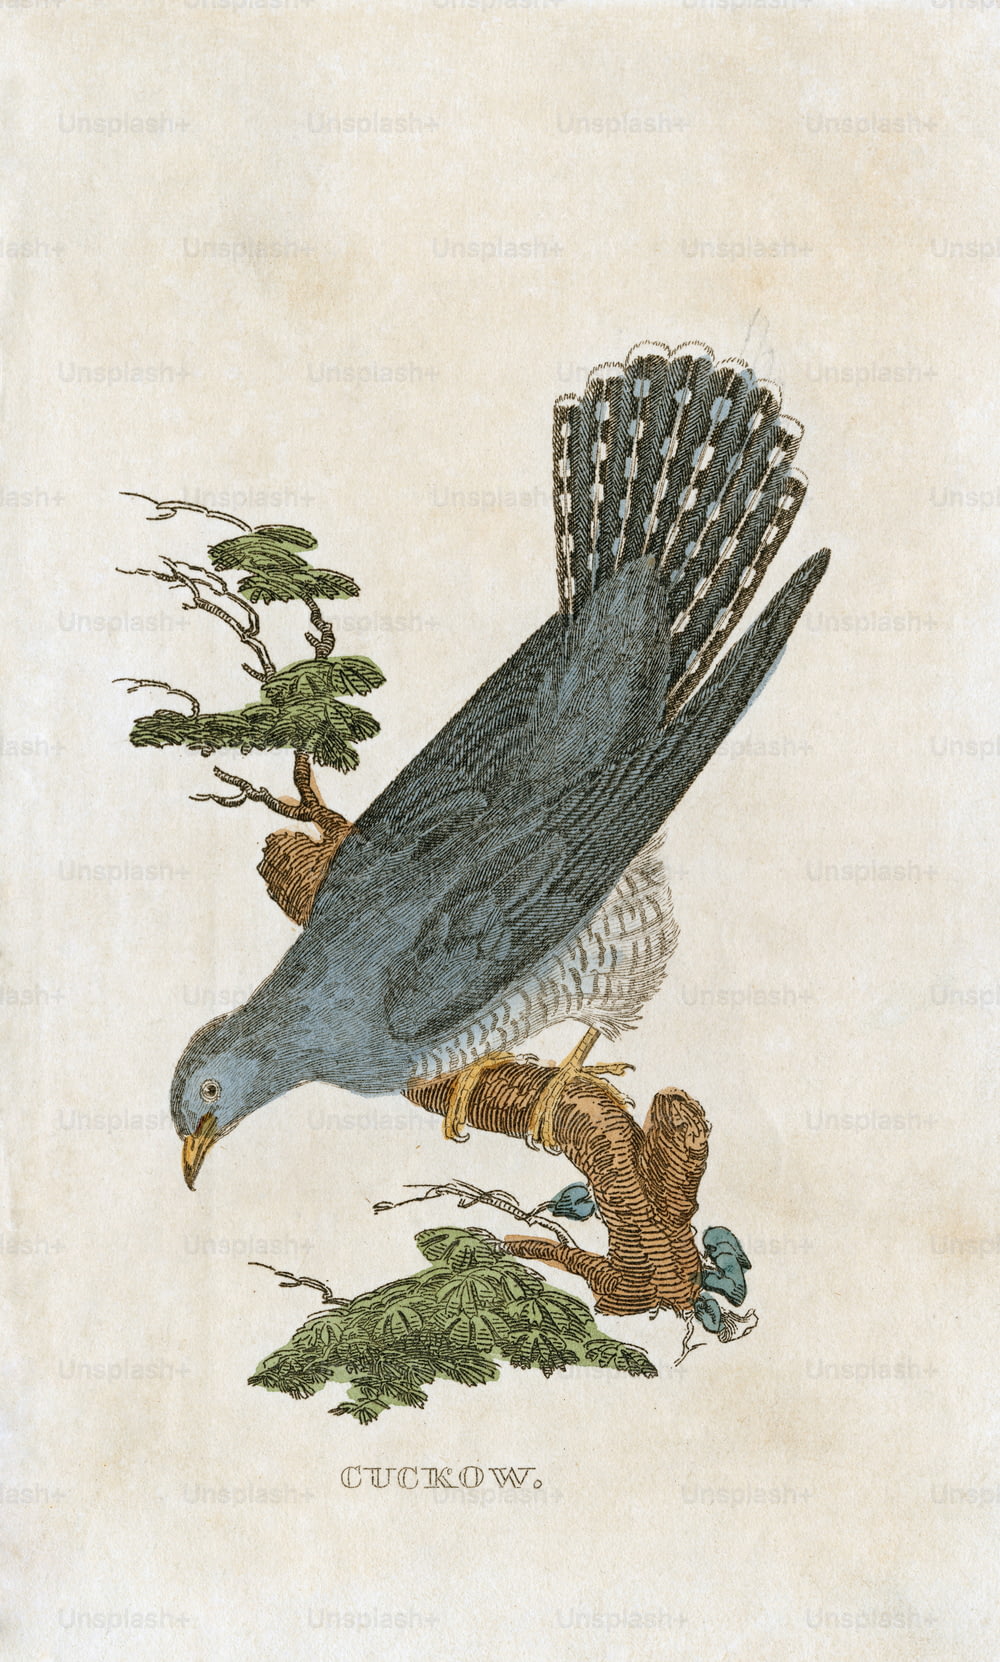 Uma ilustração de placa de um 'Cuckow', ou cuco, por volta de 1850. (Foto: Hulton Archive/Getty Images)